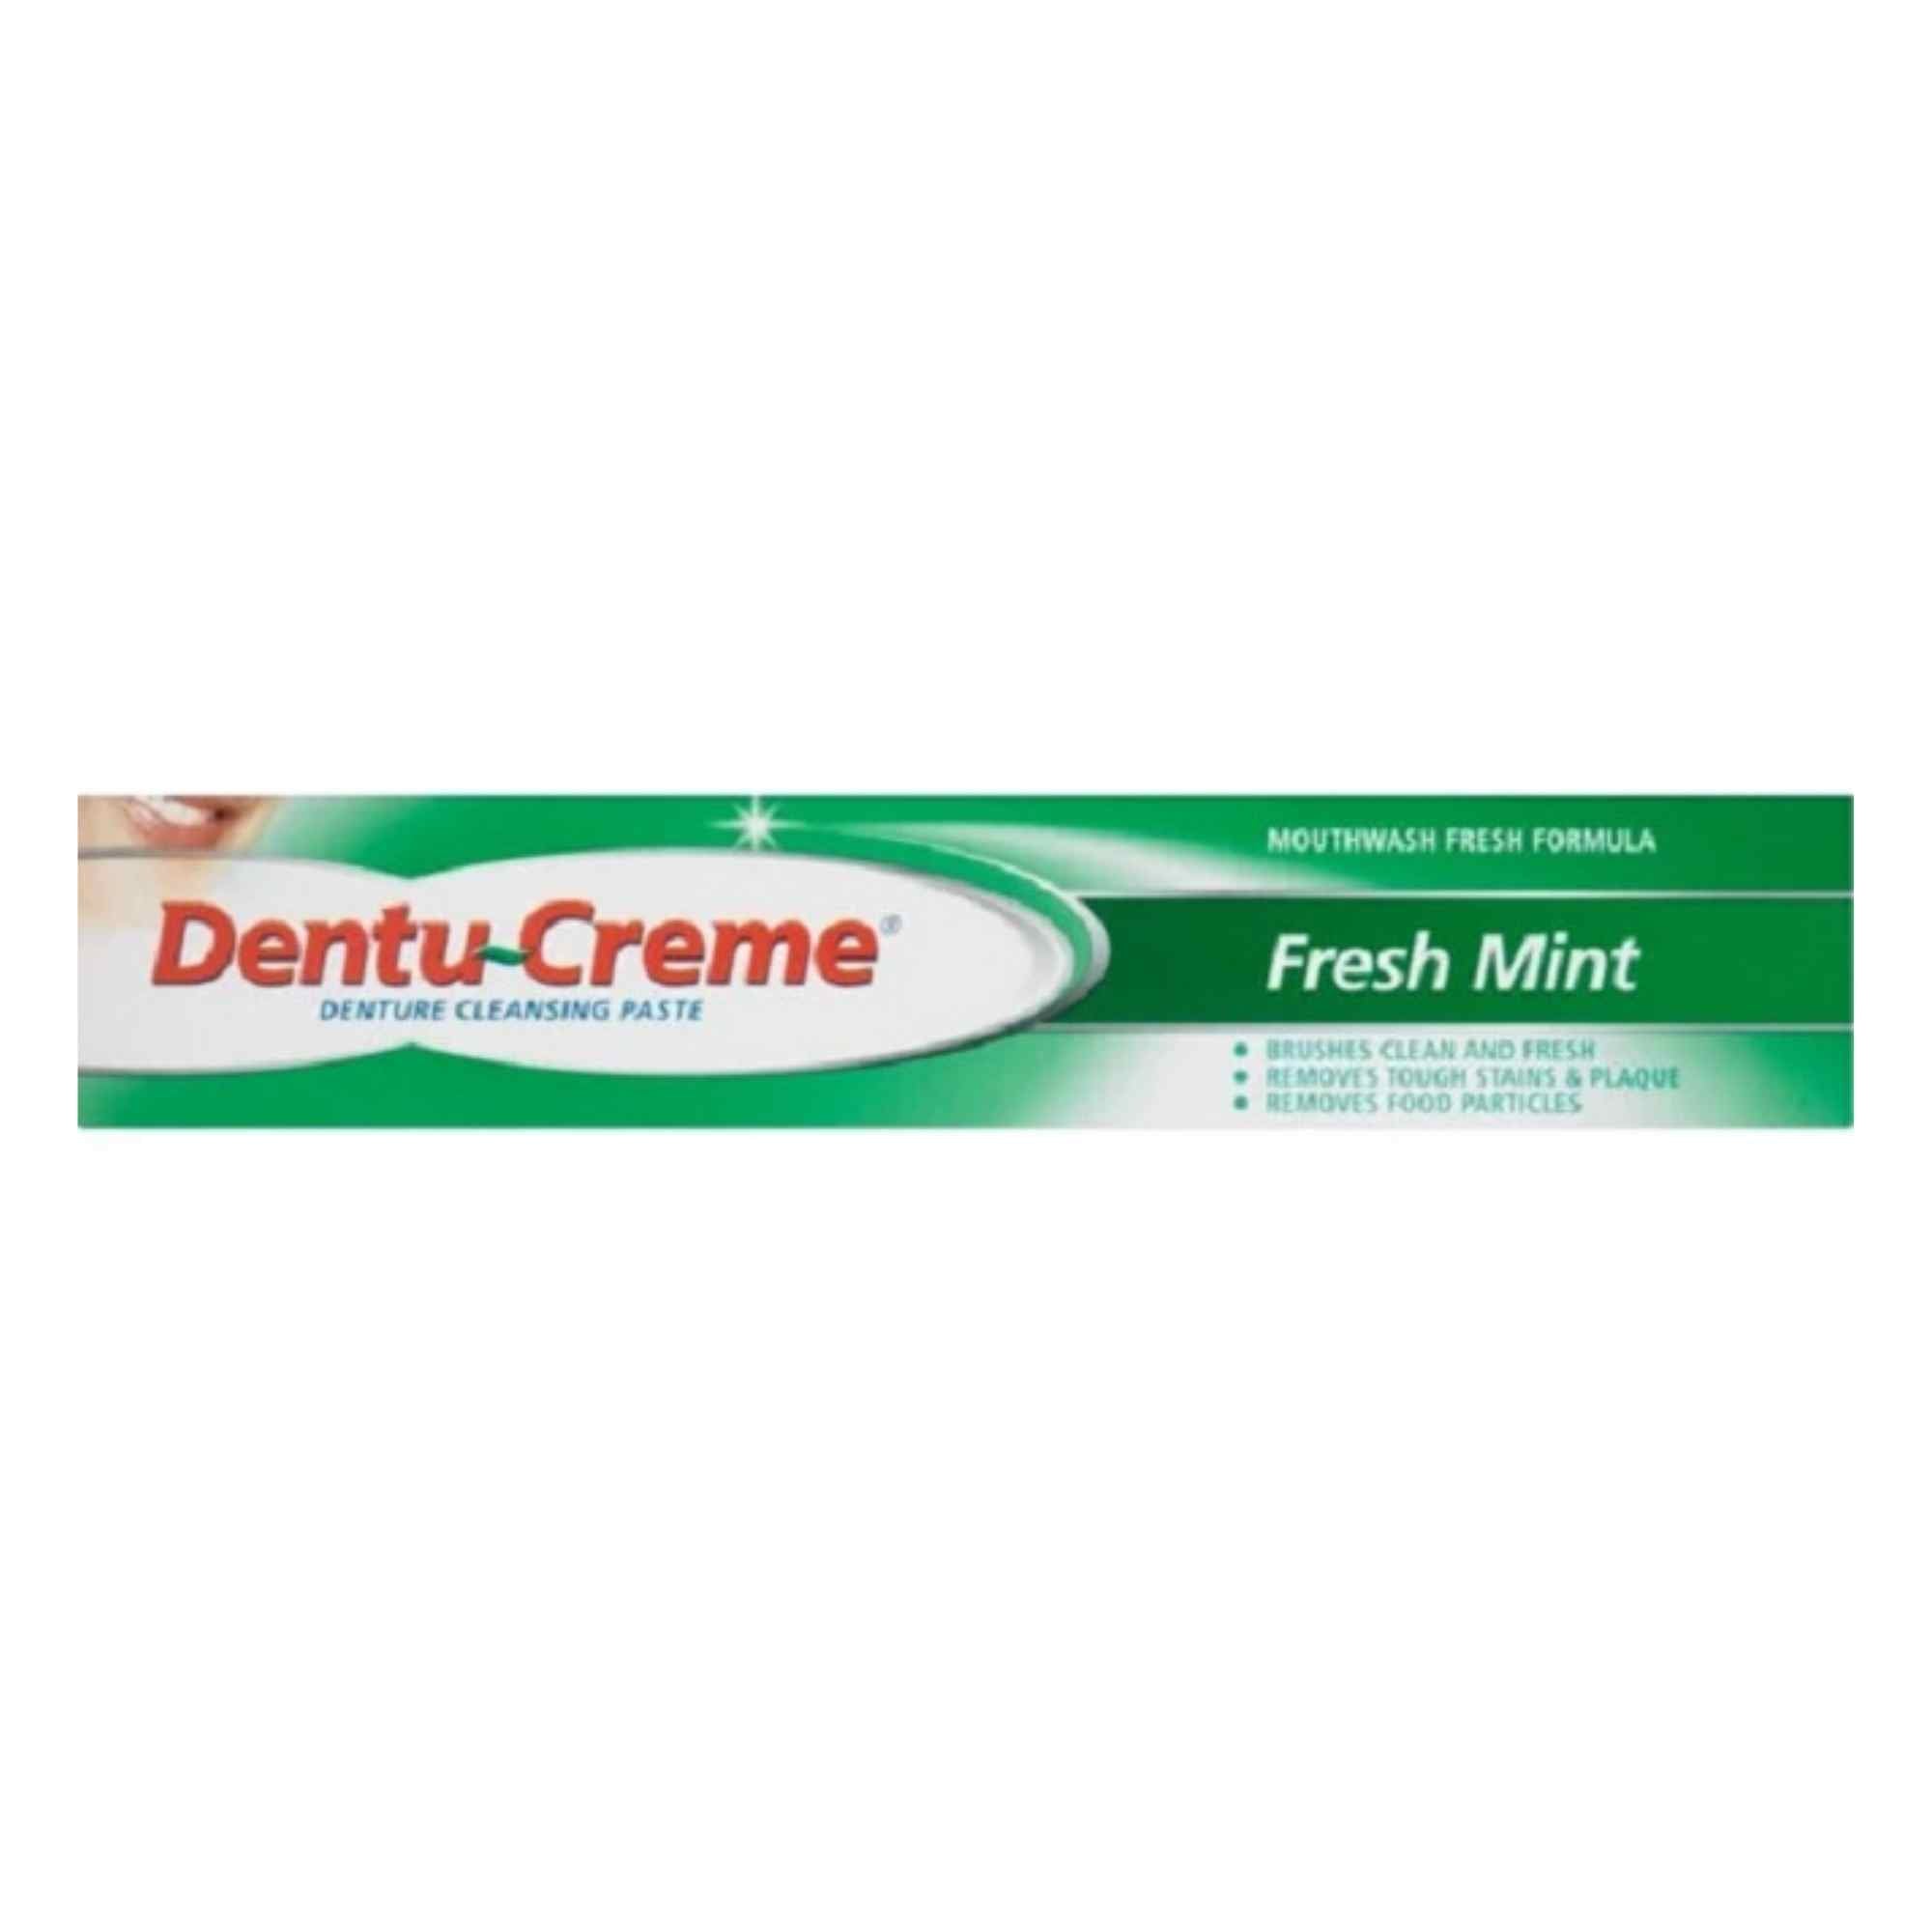 Dentu-Creme Denture Cleansing Paste